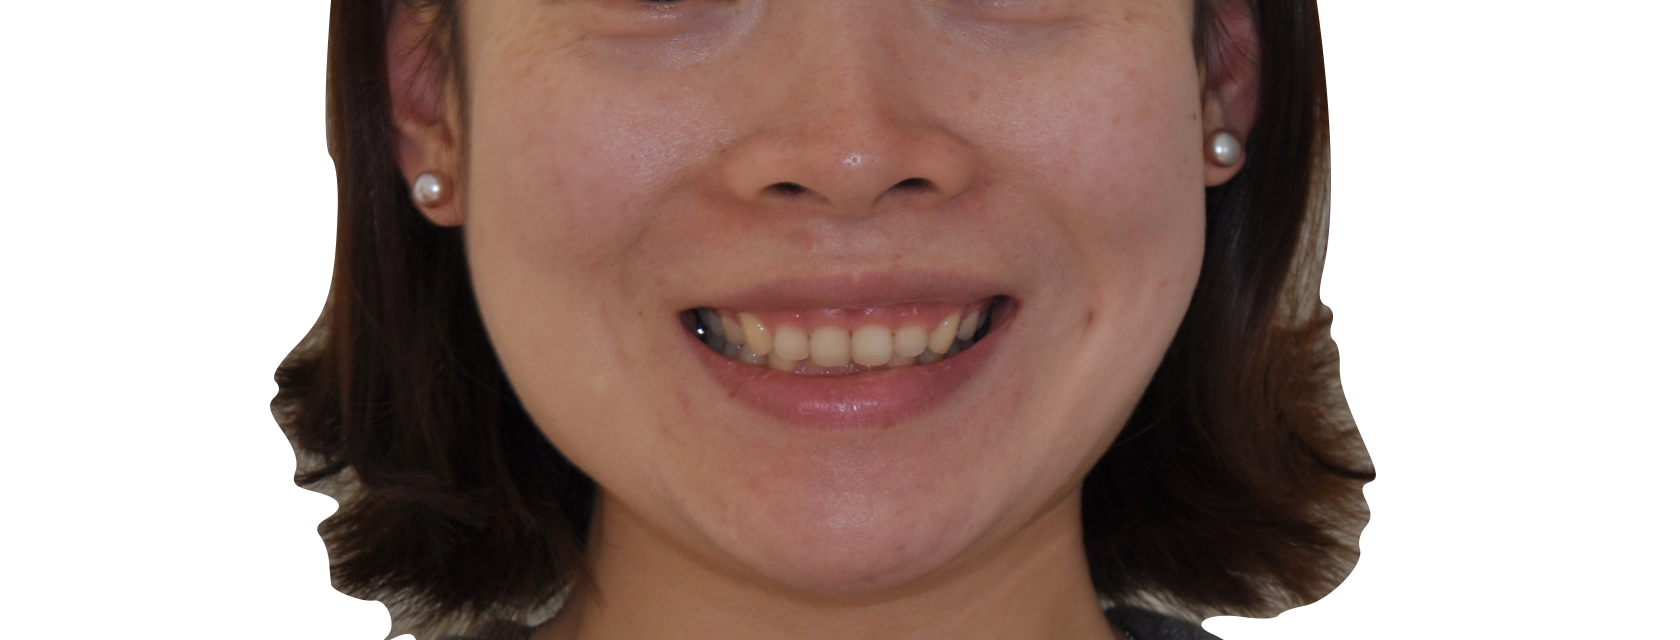 露龈笑常常伴随牙齿深覆合-就是上下牙咬住时,上牙完全包住了下牙